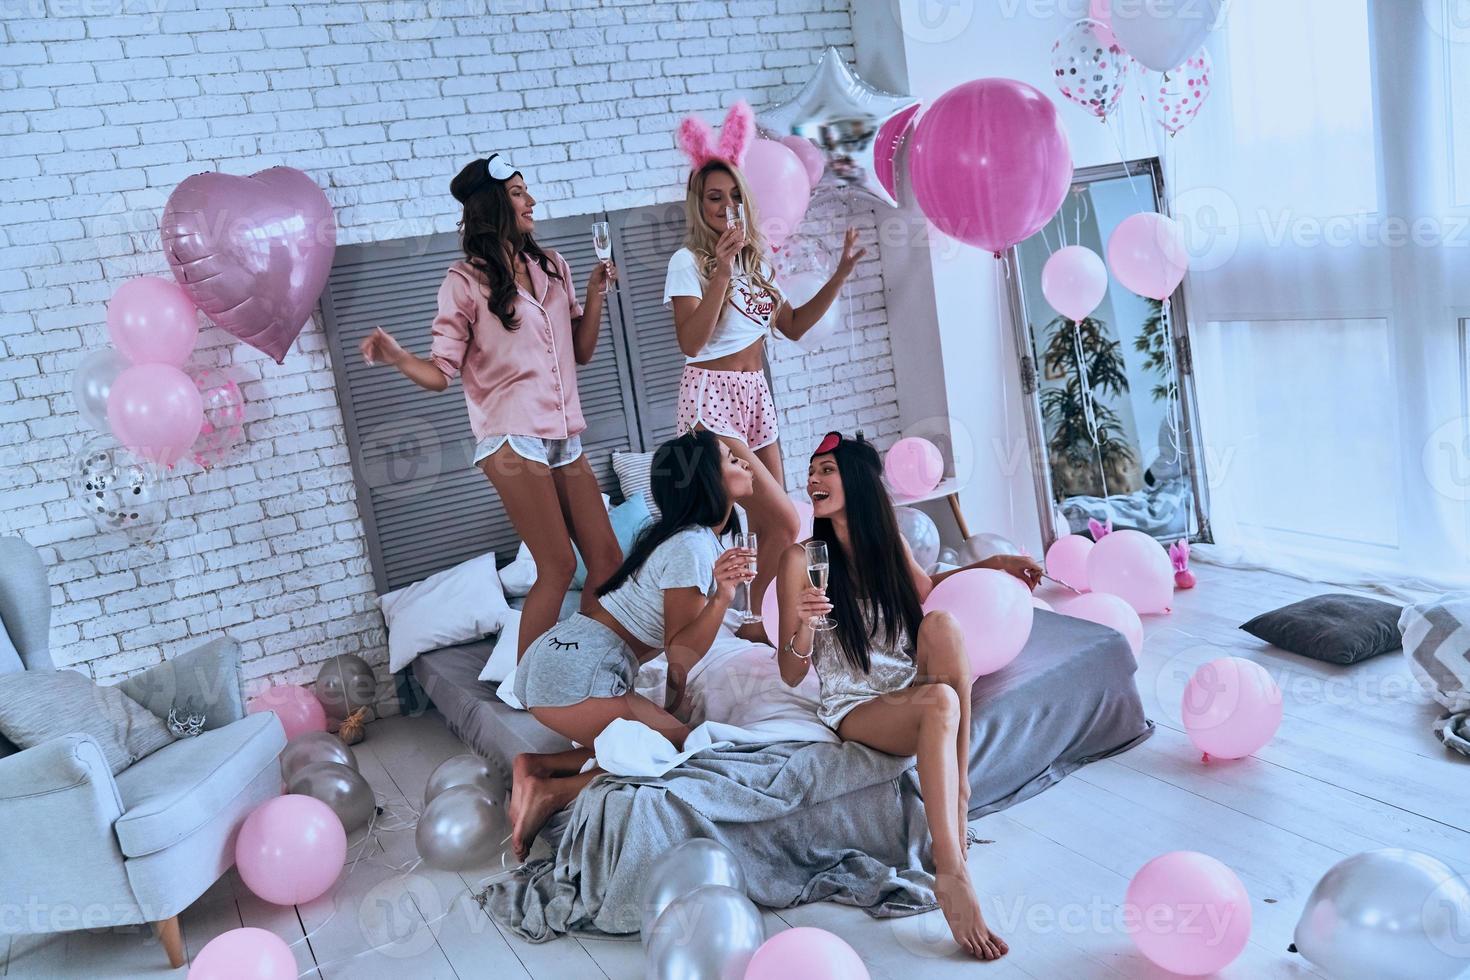 muito divertido quatro jovens sorridentes brincalhões de pijama se unindo enquanto fazem uma festa do pijama no quarto com balões por todo o lugar foto